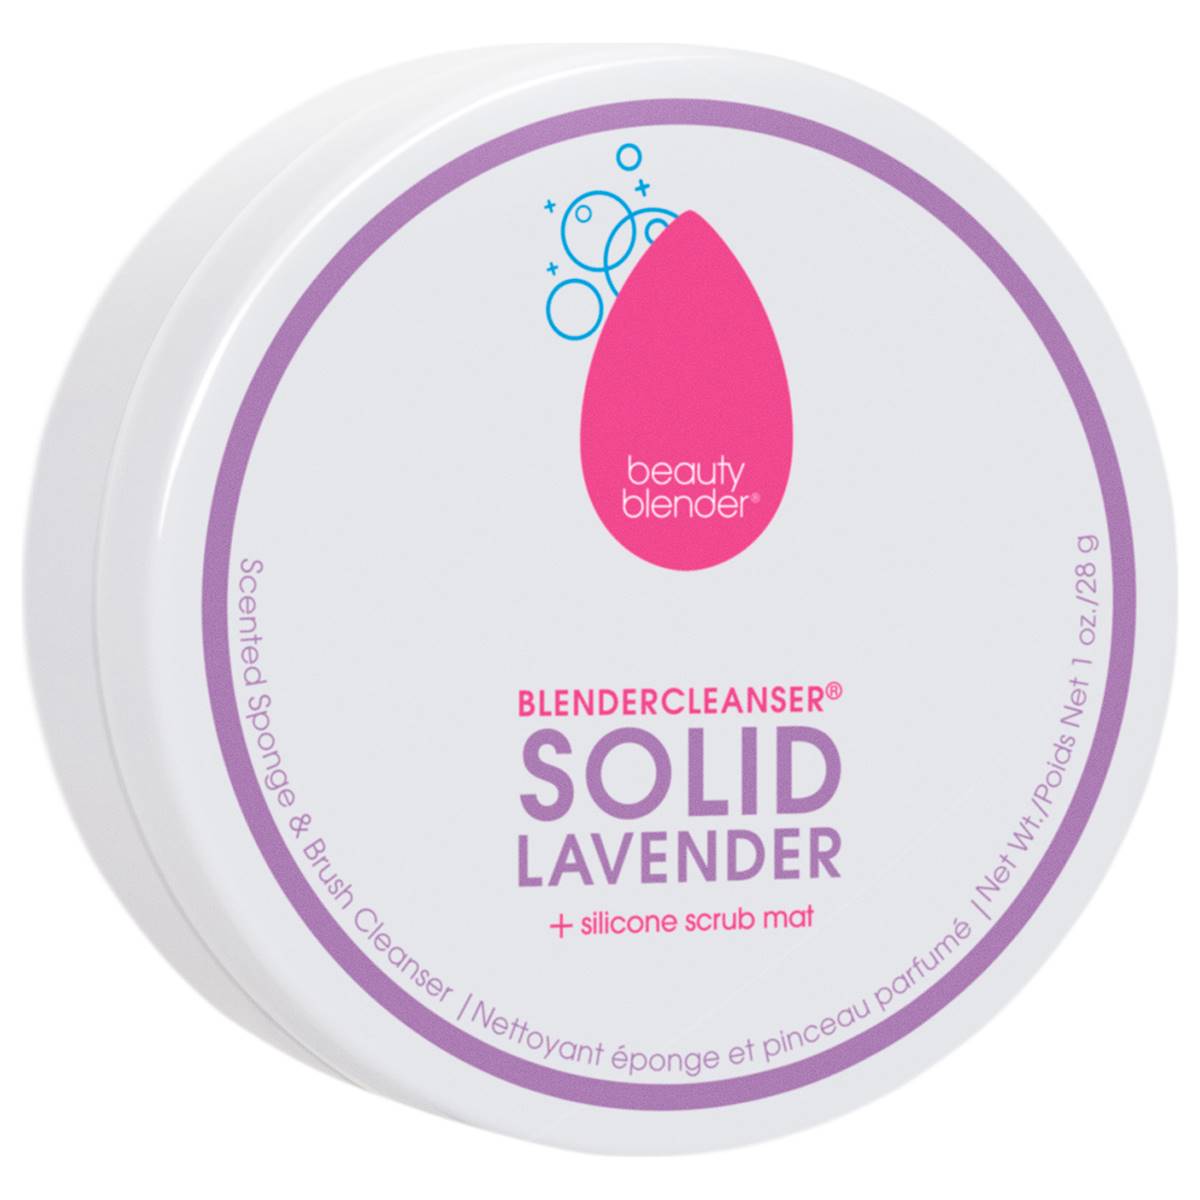 Beautyblender(R) 1oz. Solid Lavender Blender Cleanser